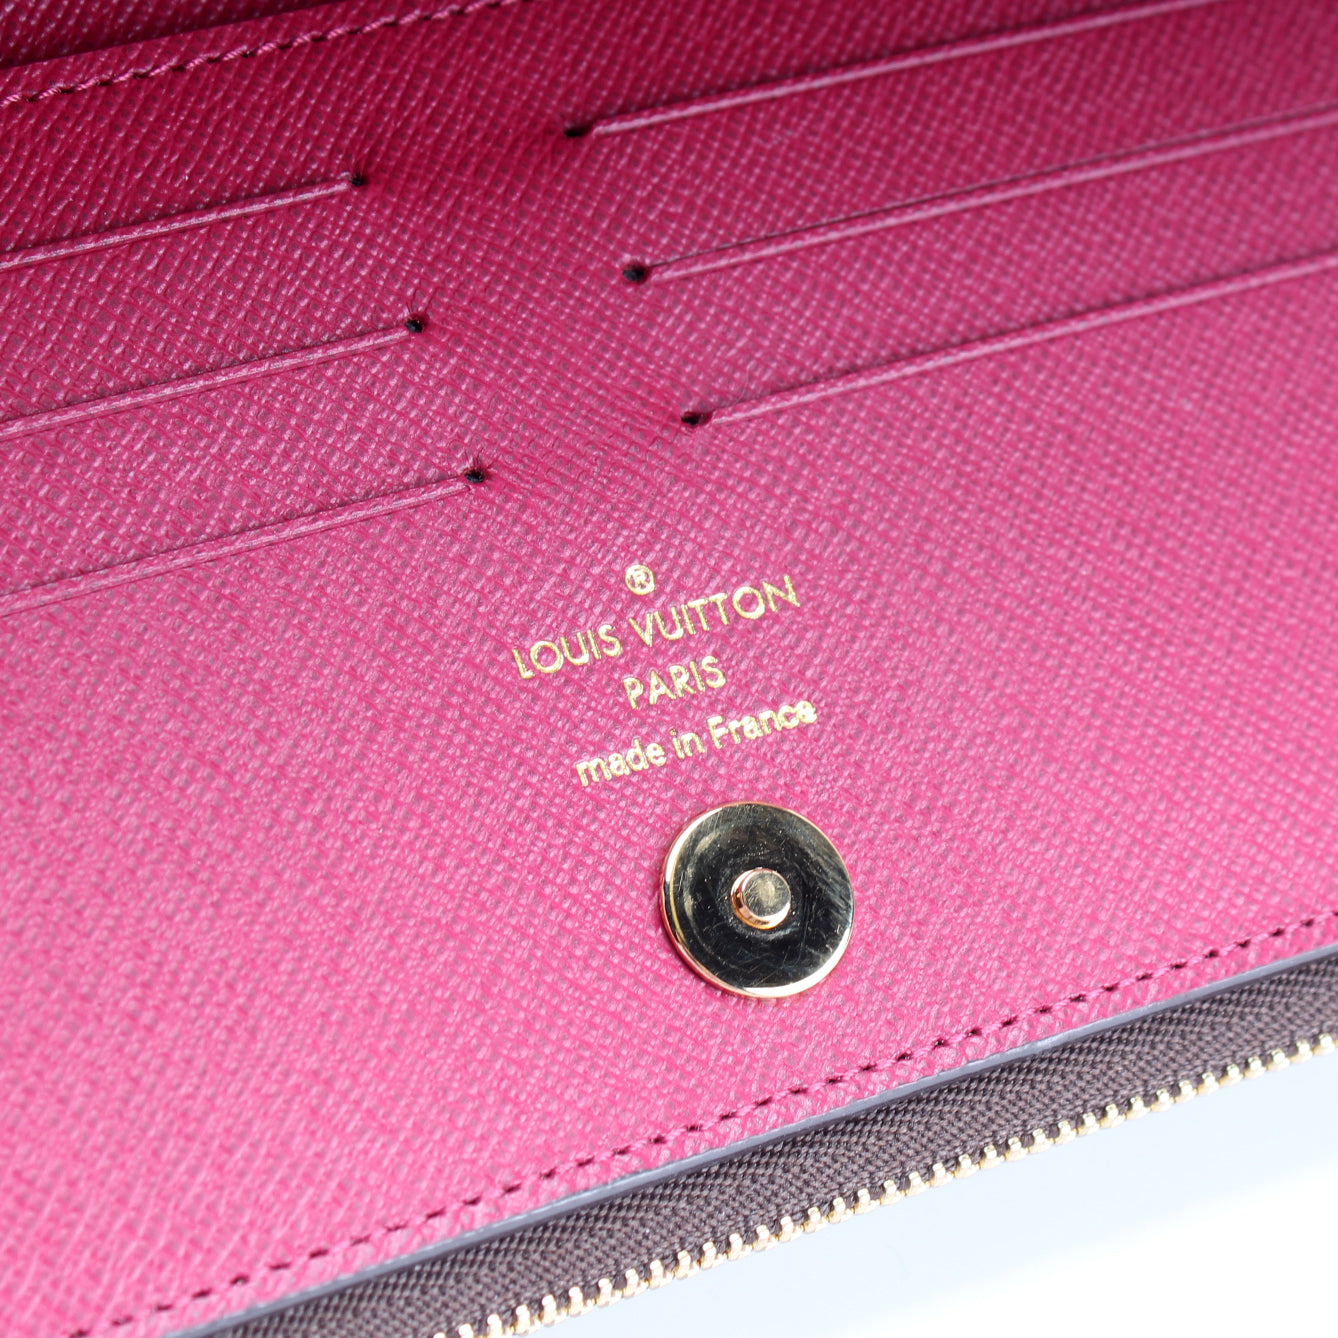 Louis Vuitton Monogram Adele Wallet Fuchsia